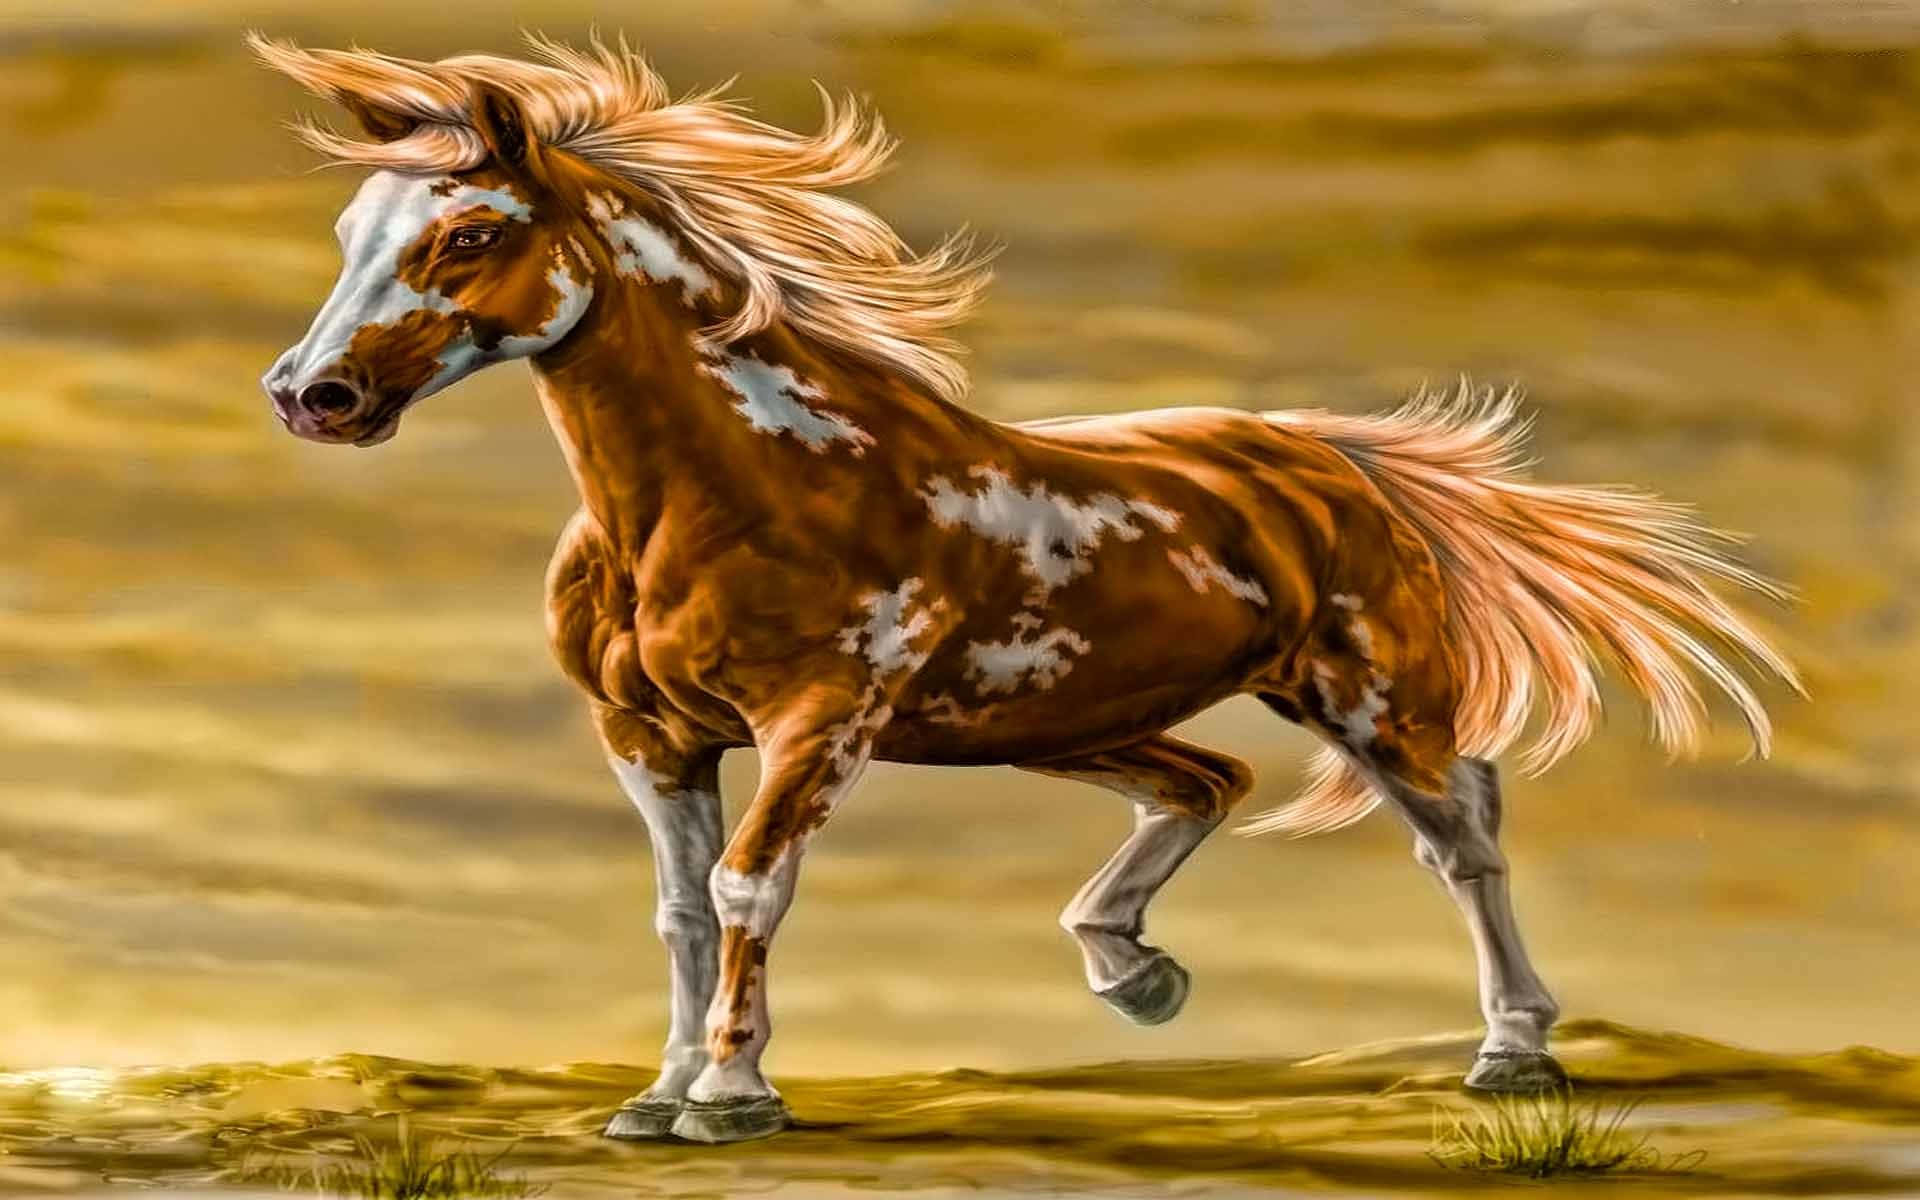 Eingemälde Eines Pferdes, Das In Der Wüste Rennt.